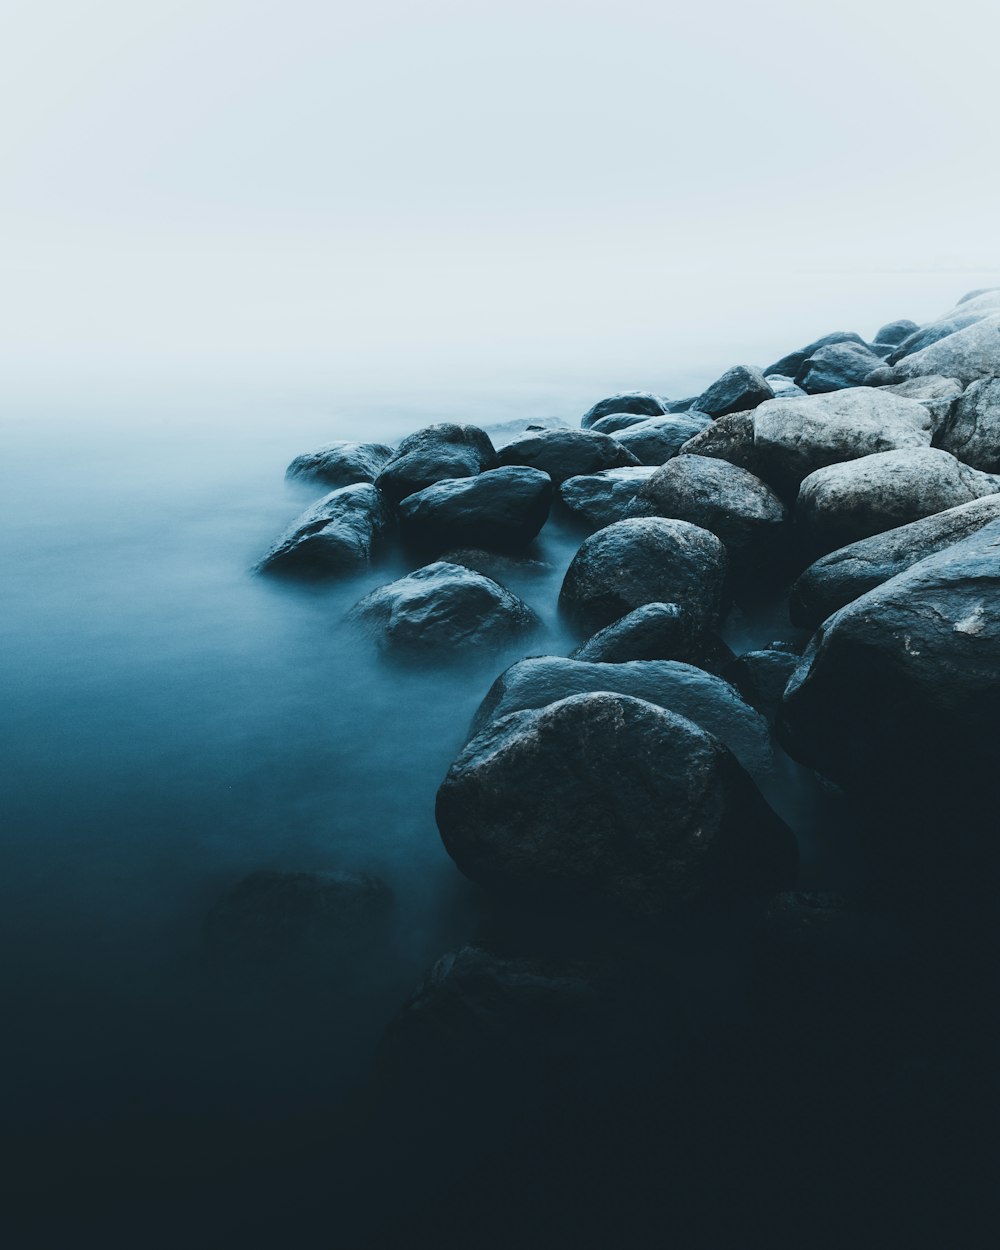 rocks near body of water